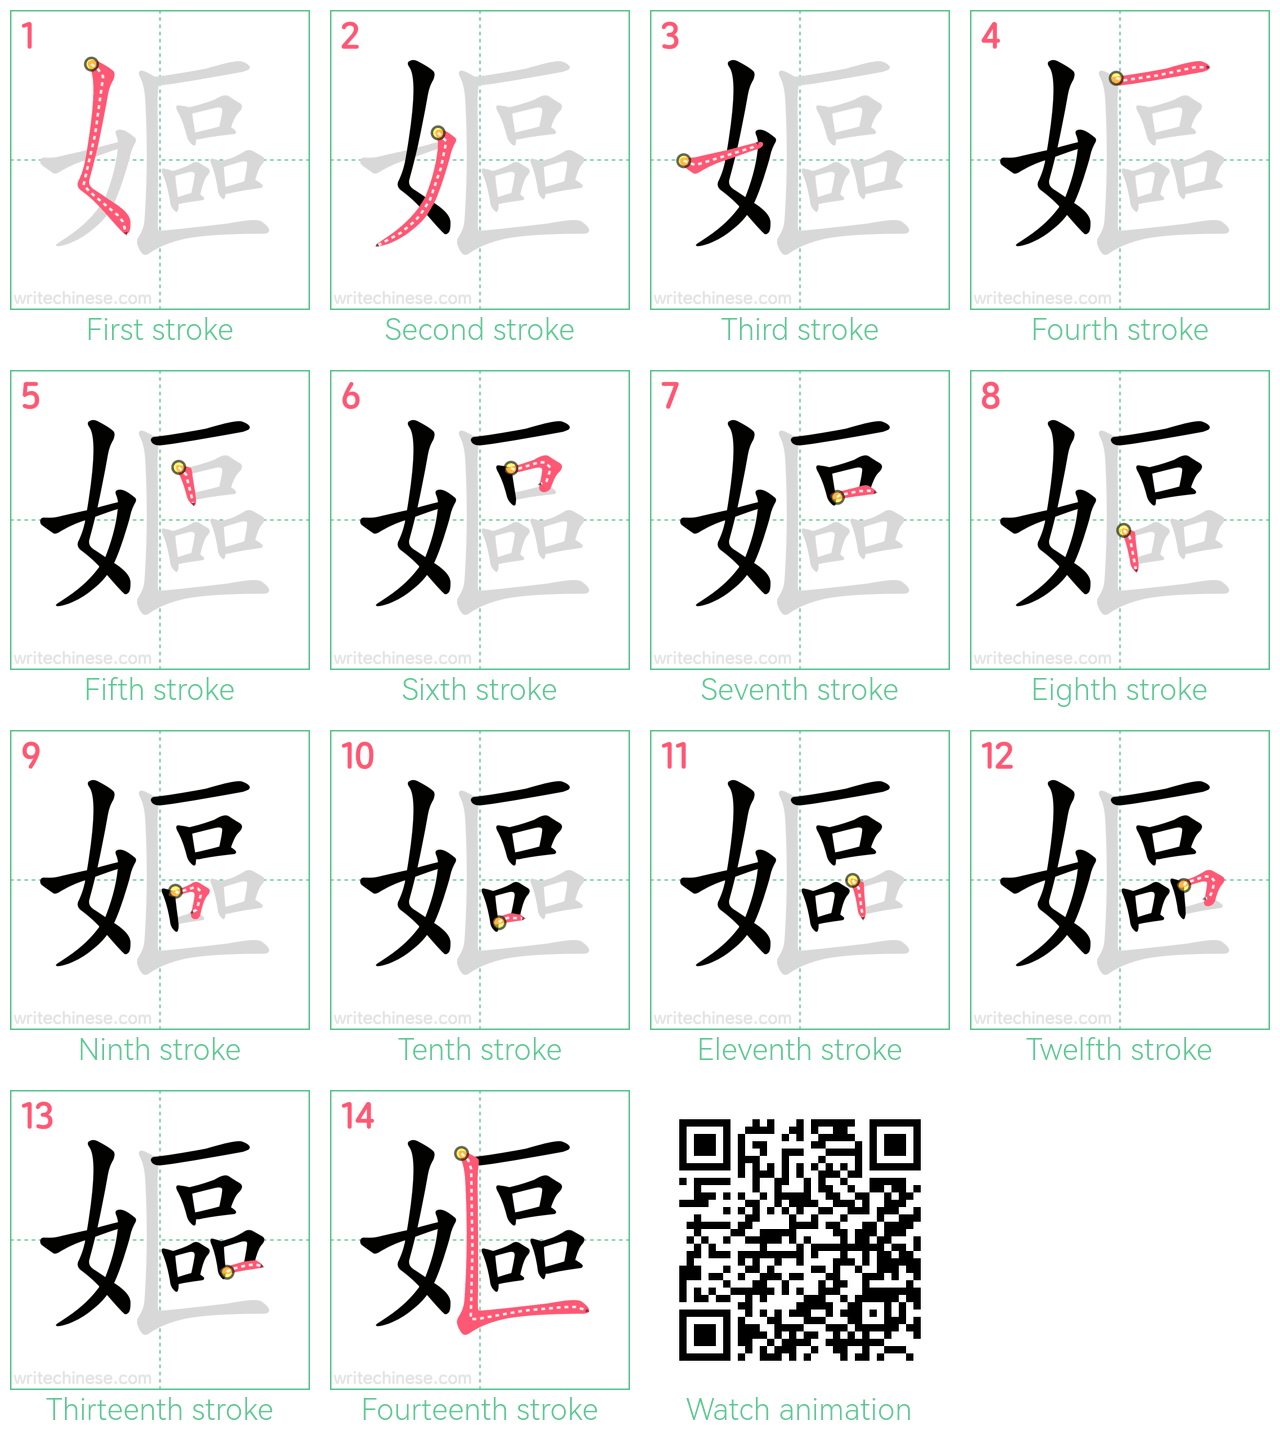 嫗 step-by-step stroke order diagrams